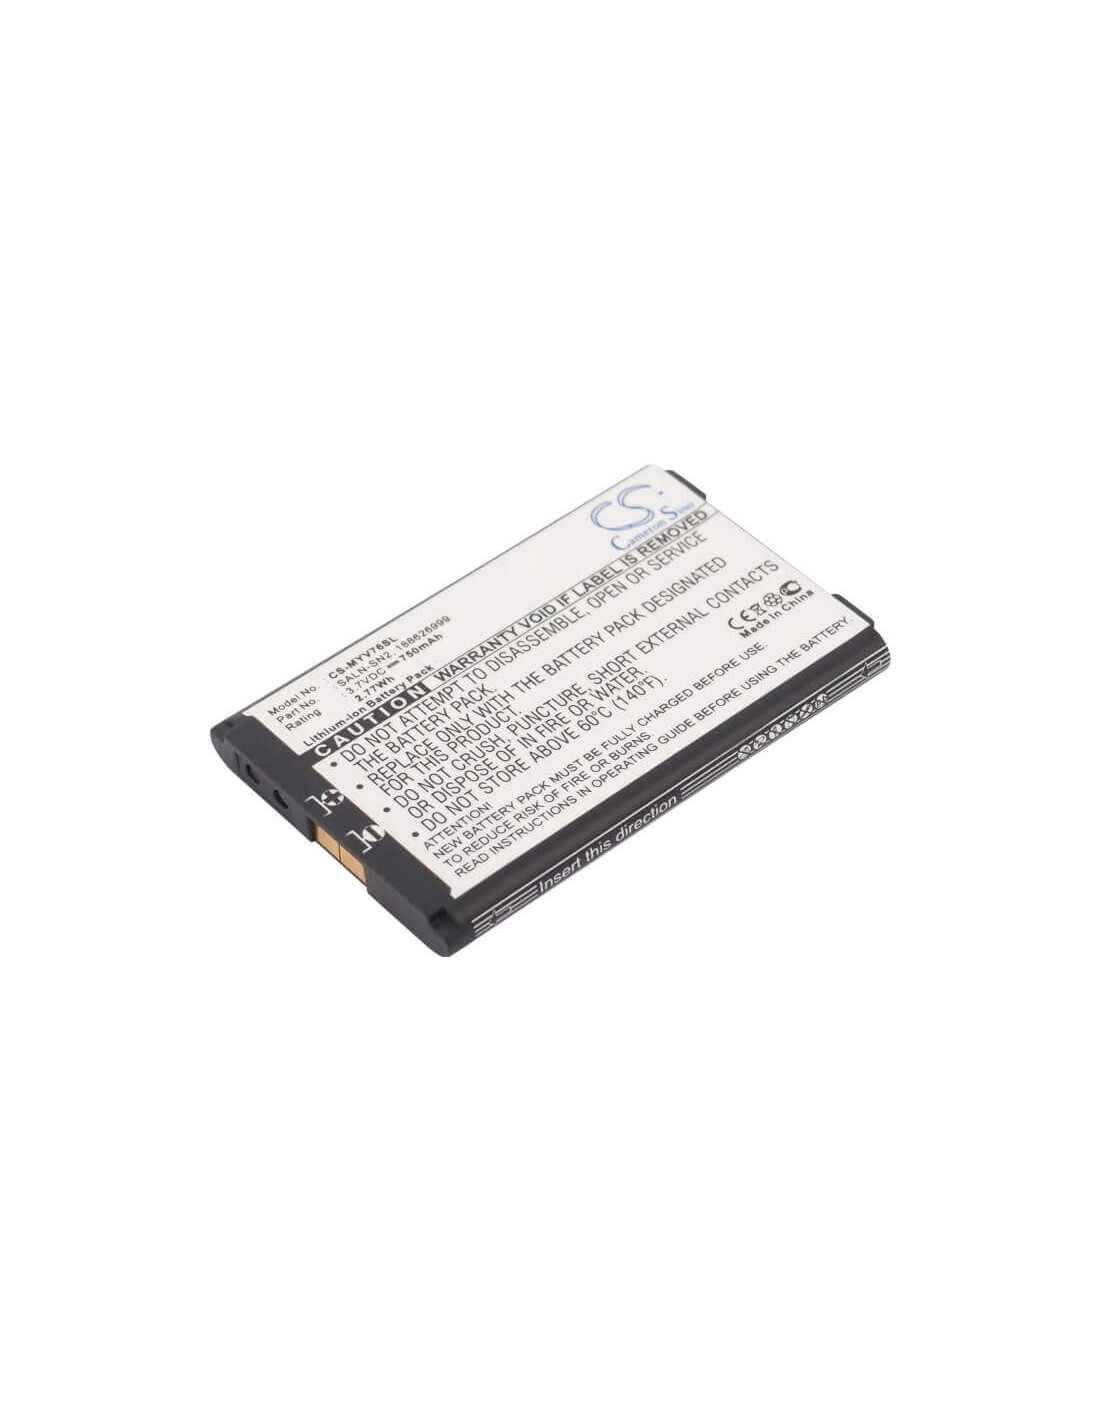 Battery for Sagem MYX6-2, MY-V76, MYX62 3.7V, 750mAh - 2.78Wh